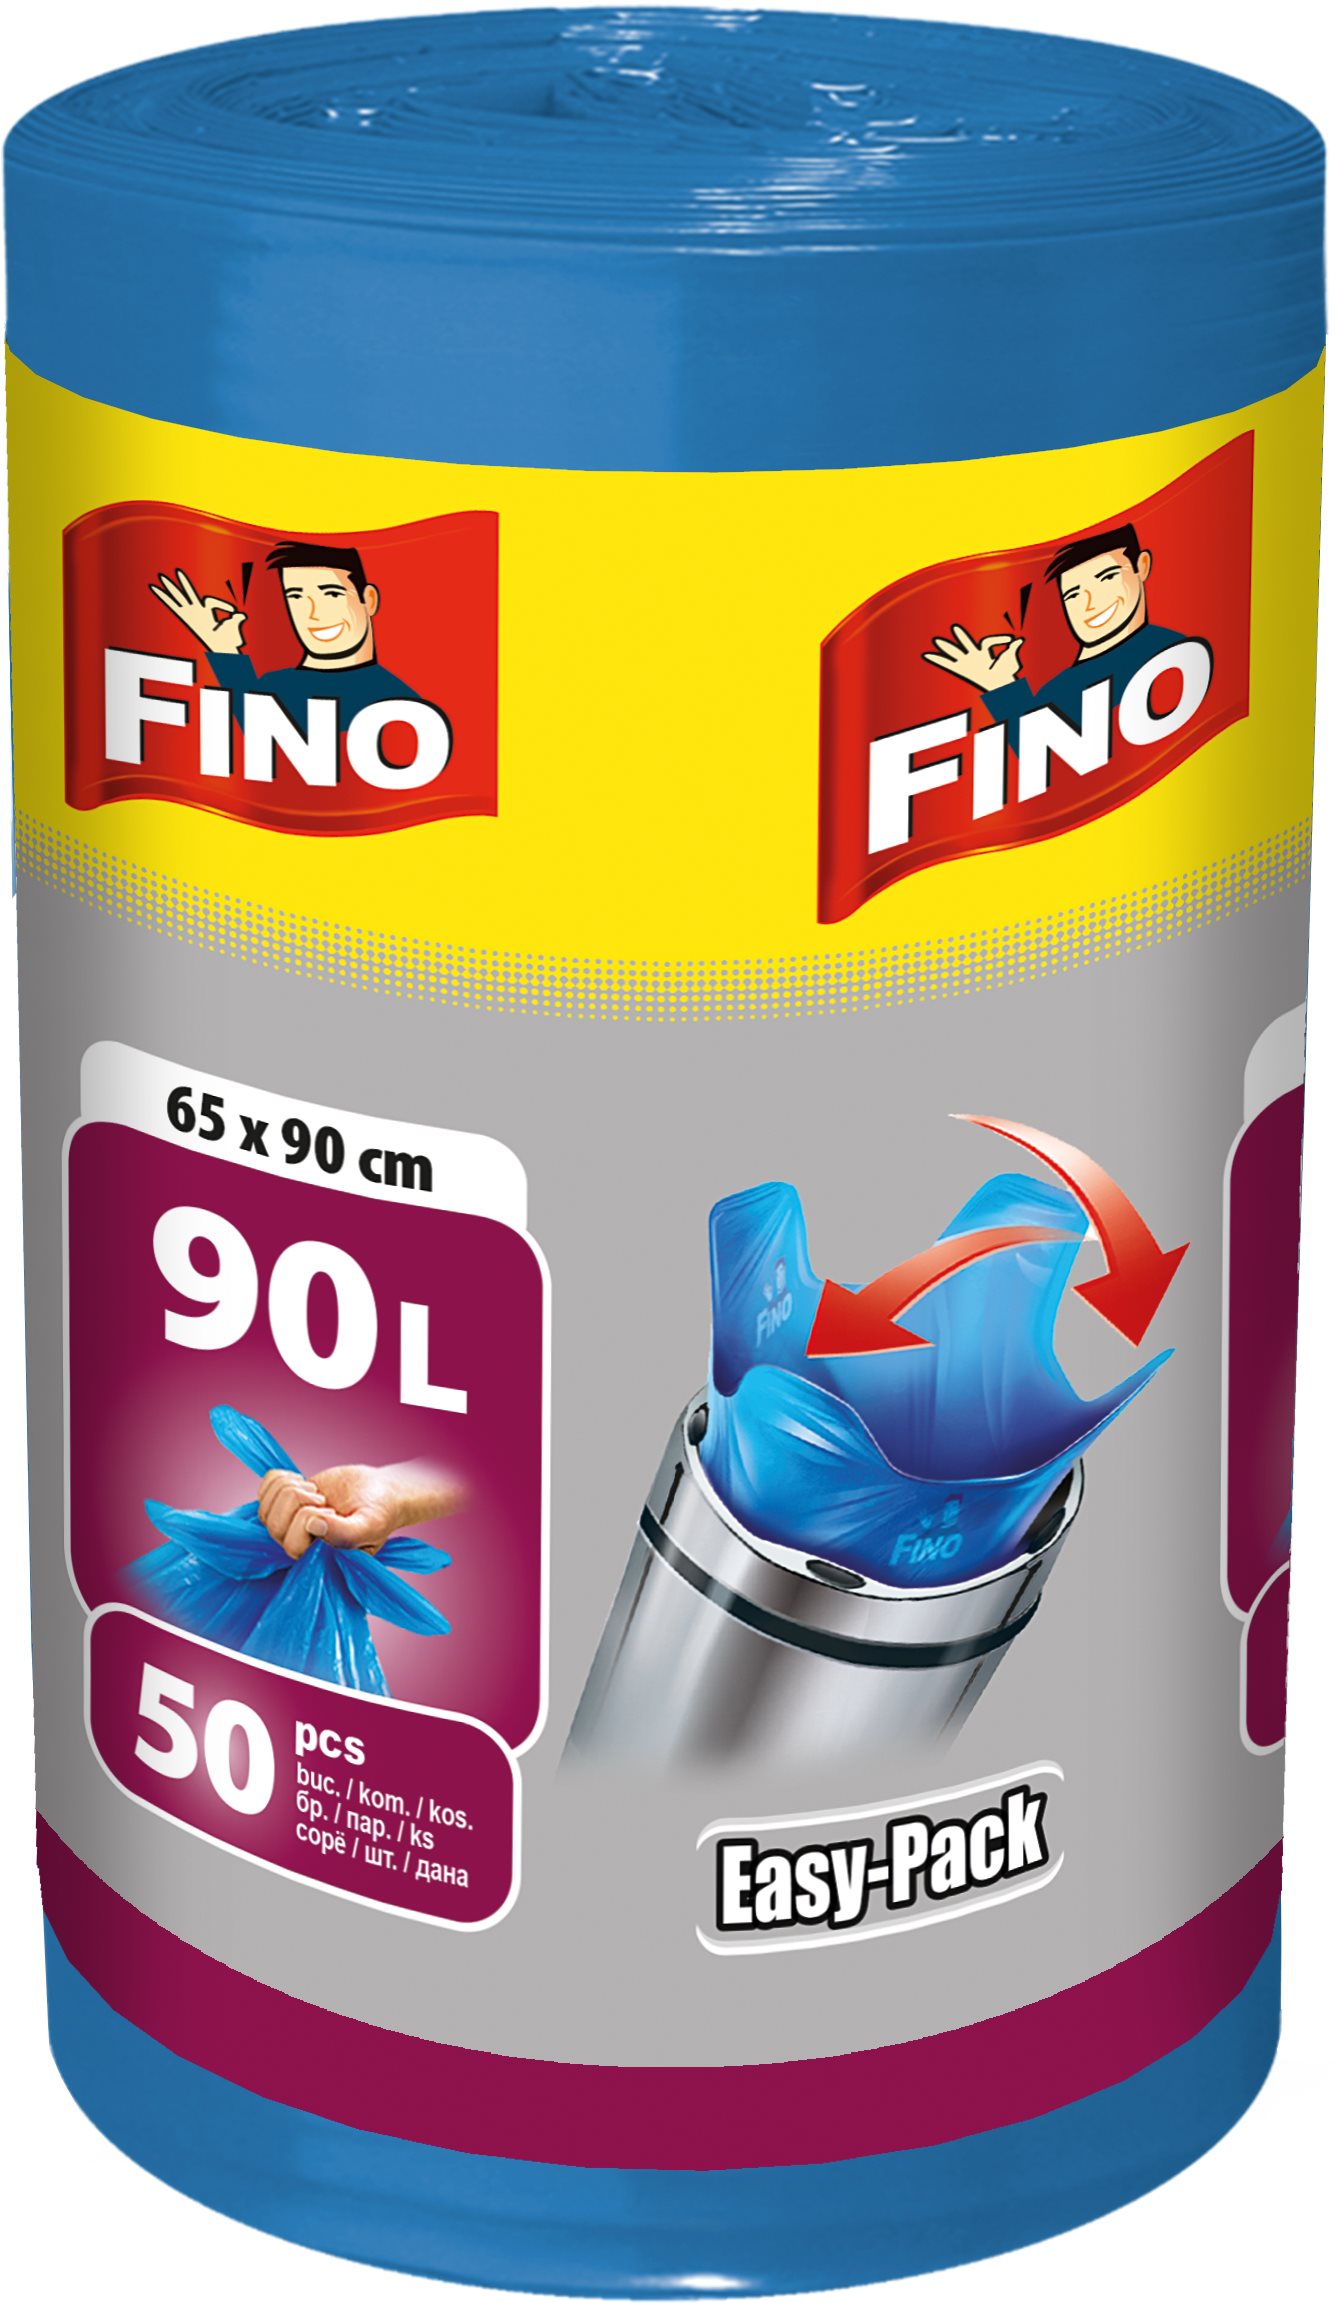 Szemeteszsák FINO Easy pack 90 l